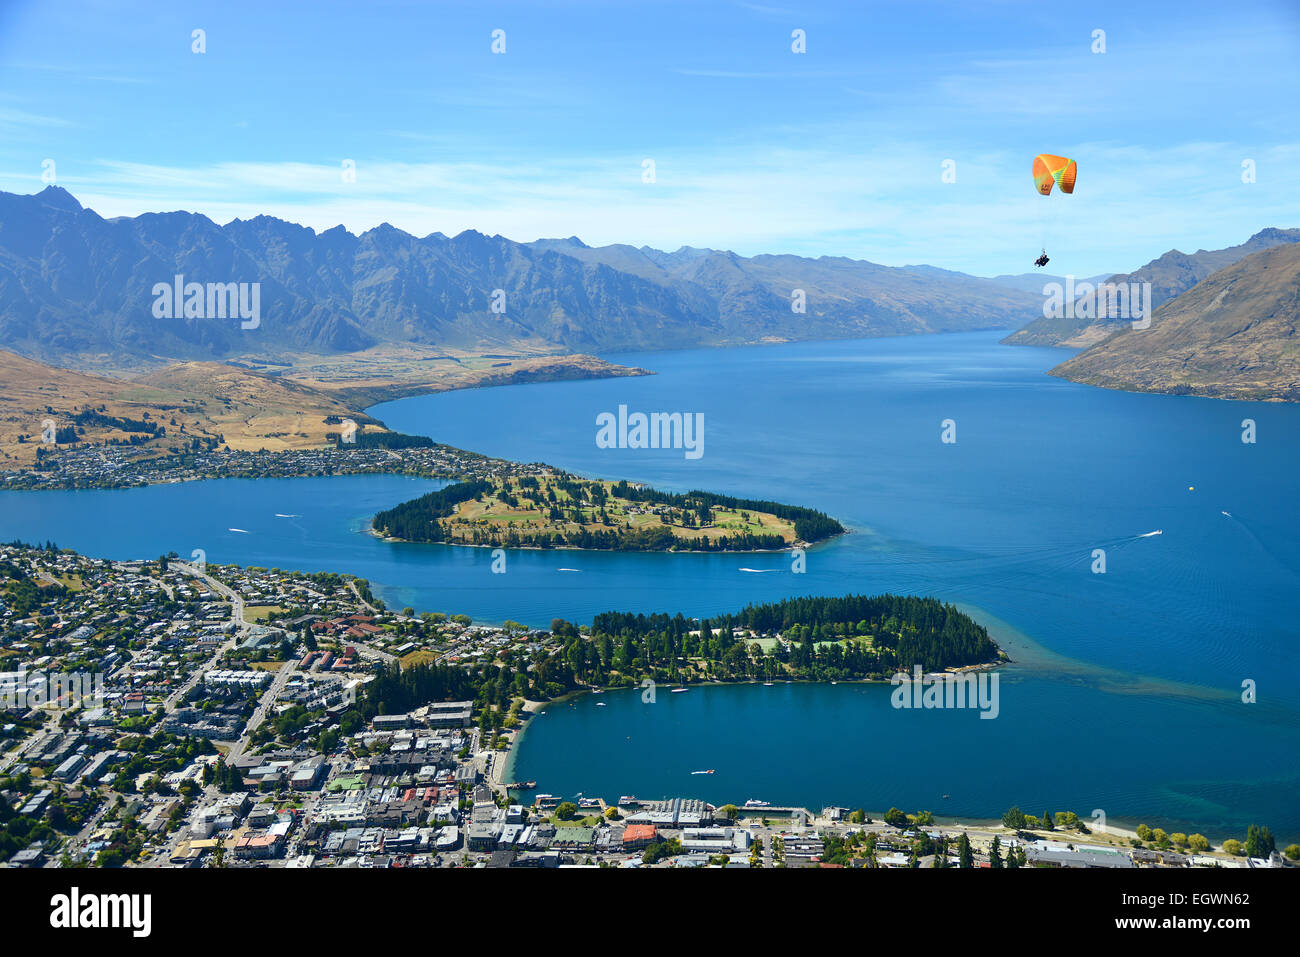 Biplace parapente sur Queenstown (capitale mondiale de l'aventure), sur les rives du lac Wakatipu, île du Sud, Nouvelle-Zélande. Banque D'Images